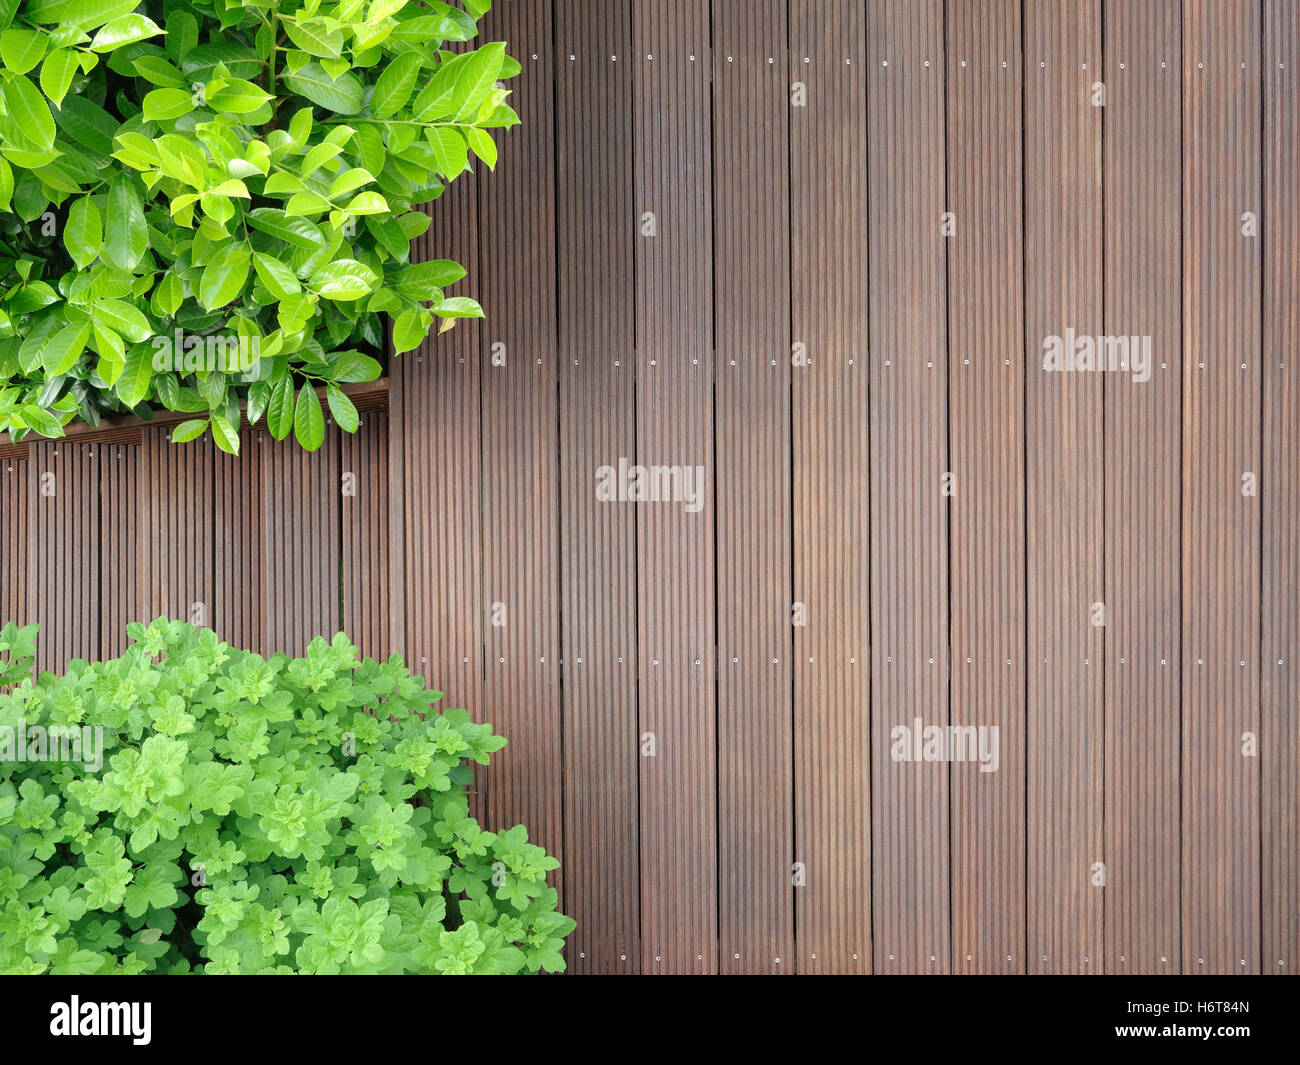 aerial perspective, garden, wood, gardens, floor covering, cherry laurel, Stock Photo